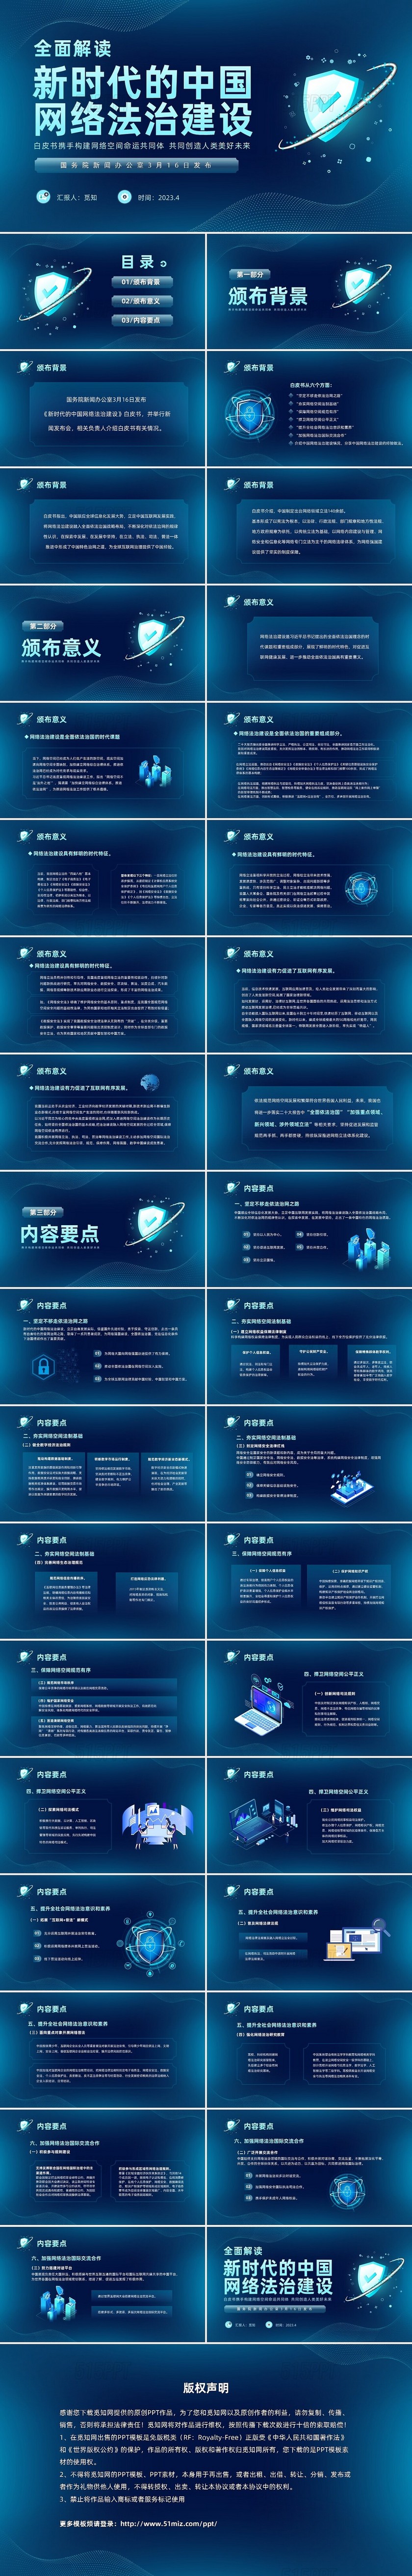 深蓝色科技风网络全面解读新时代的中国网络法治建设白皮书PPT网络安全